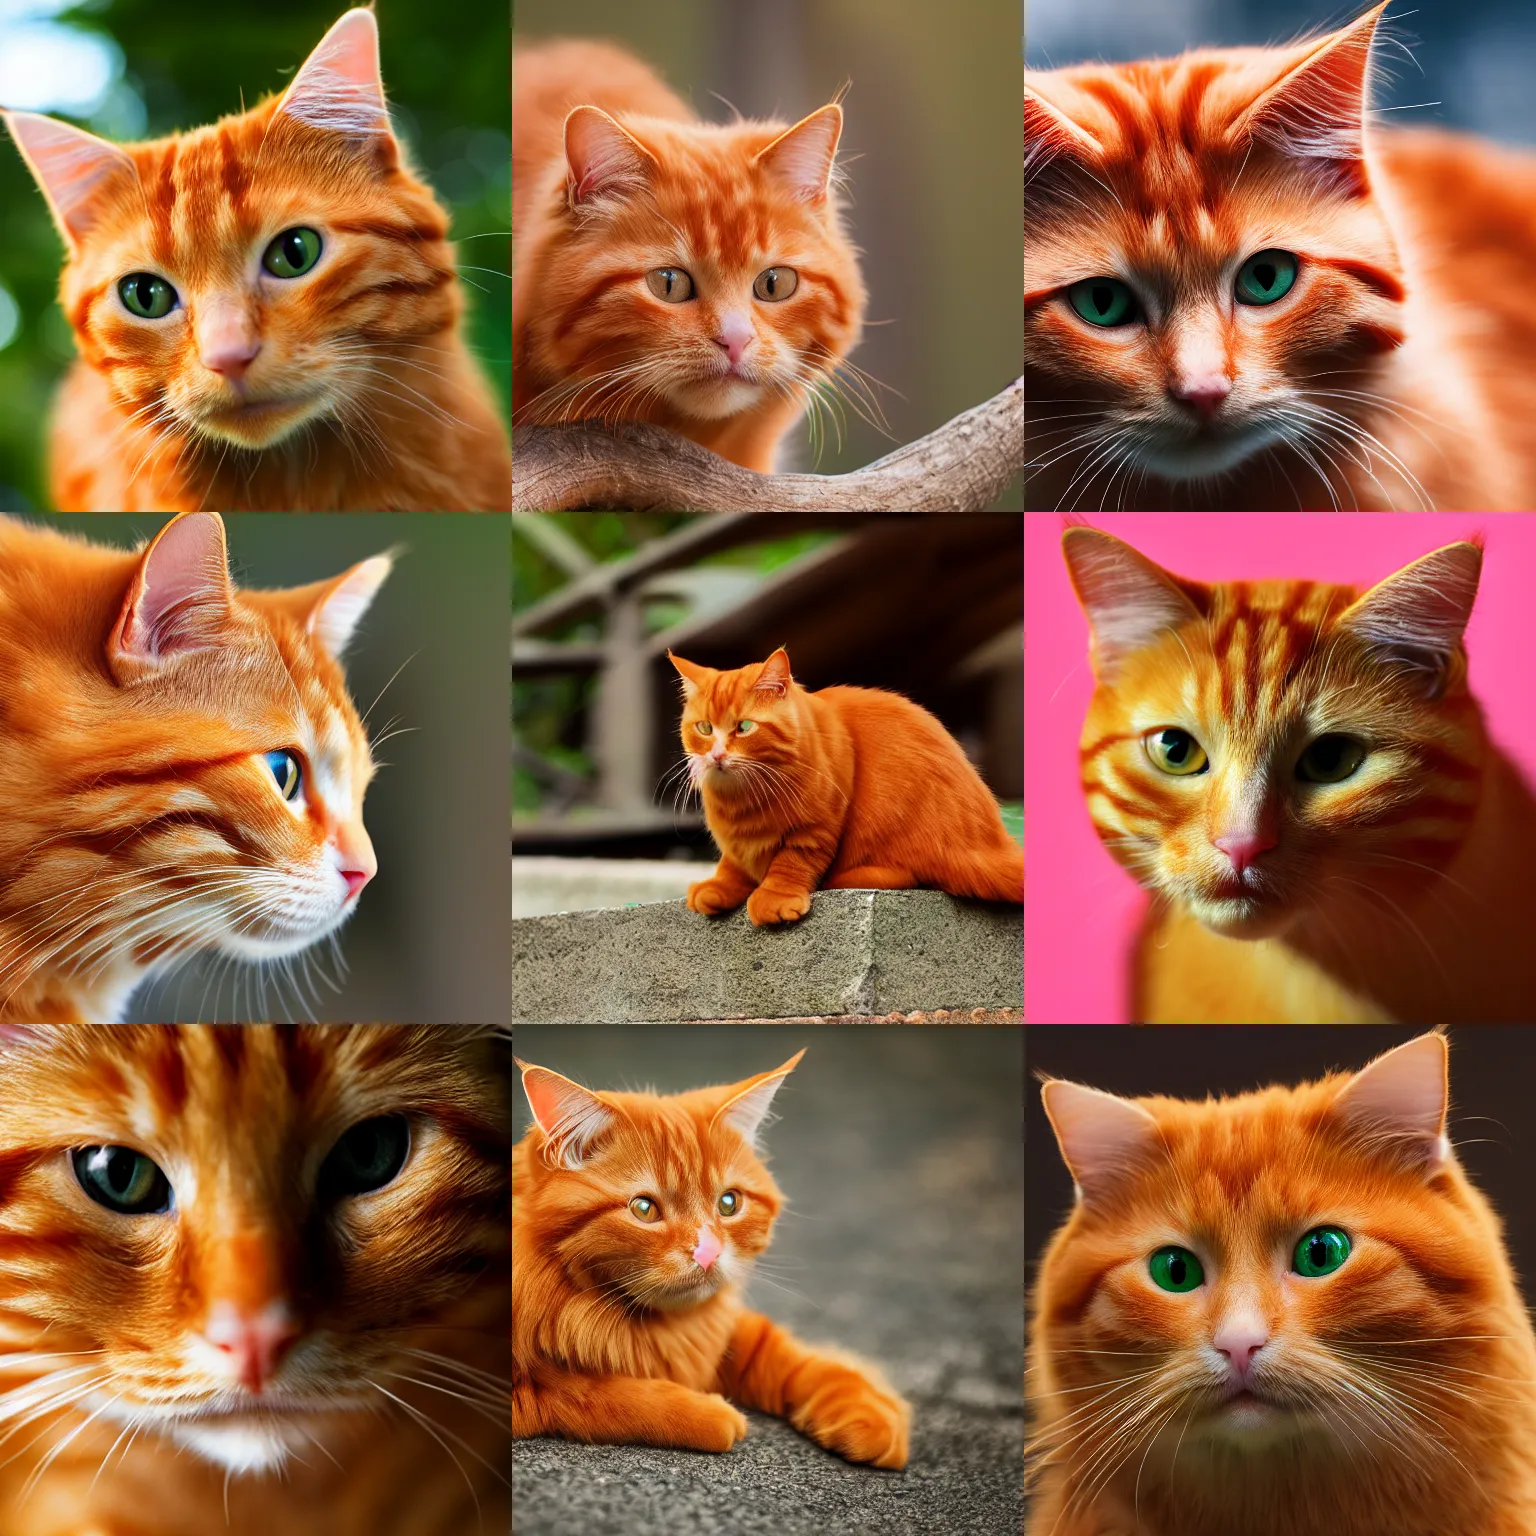 Prompt: ginger cat. 4K resolution